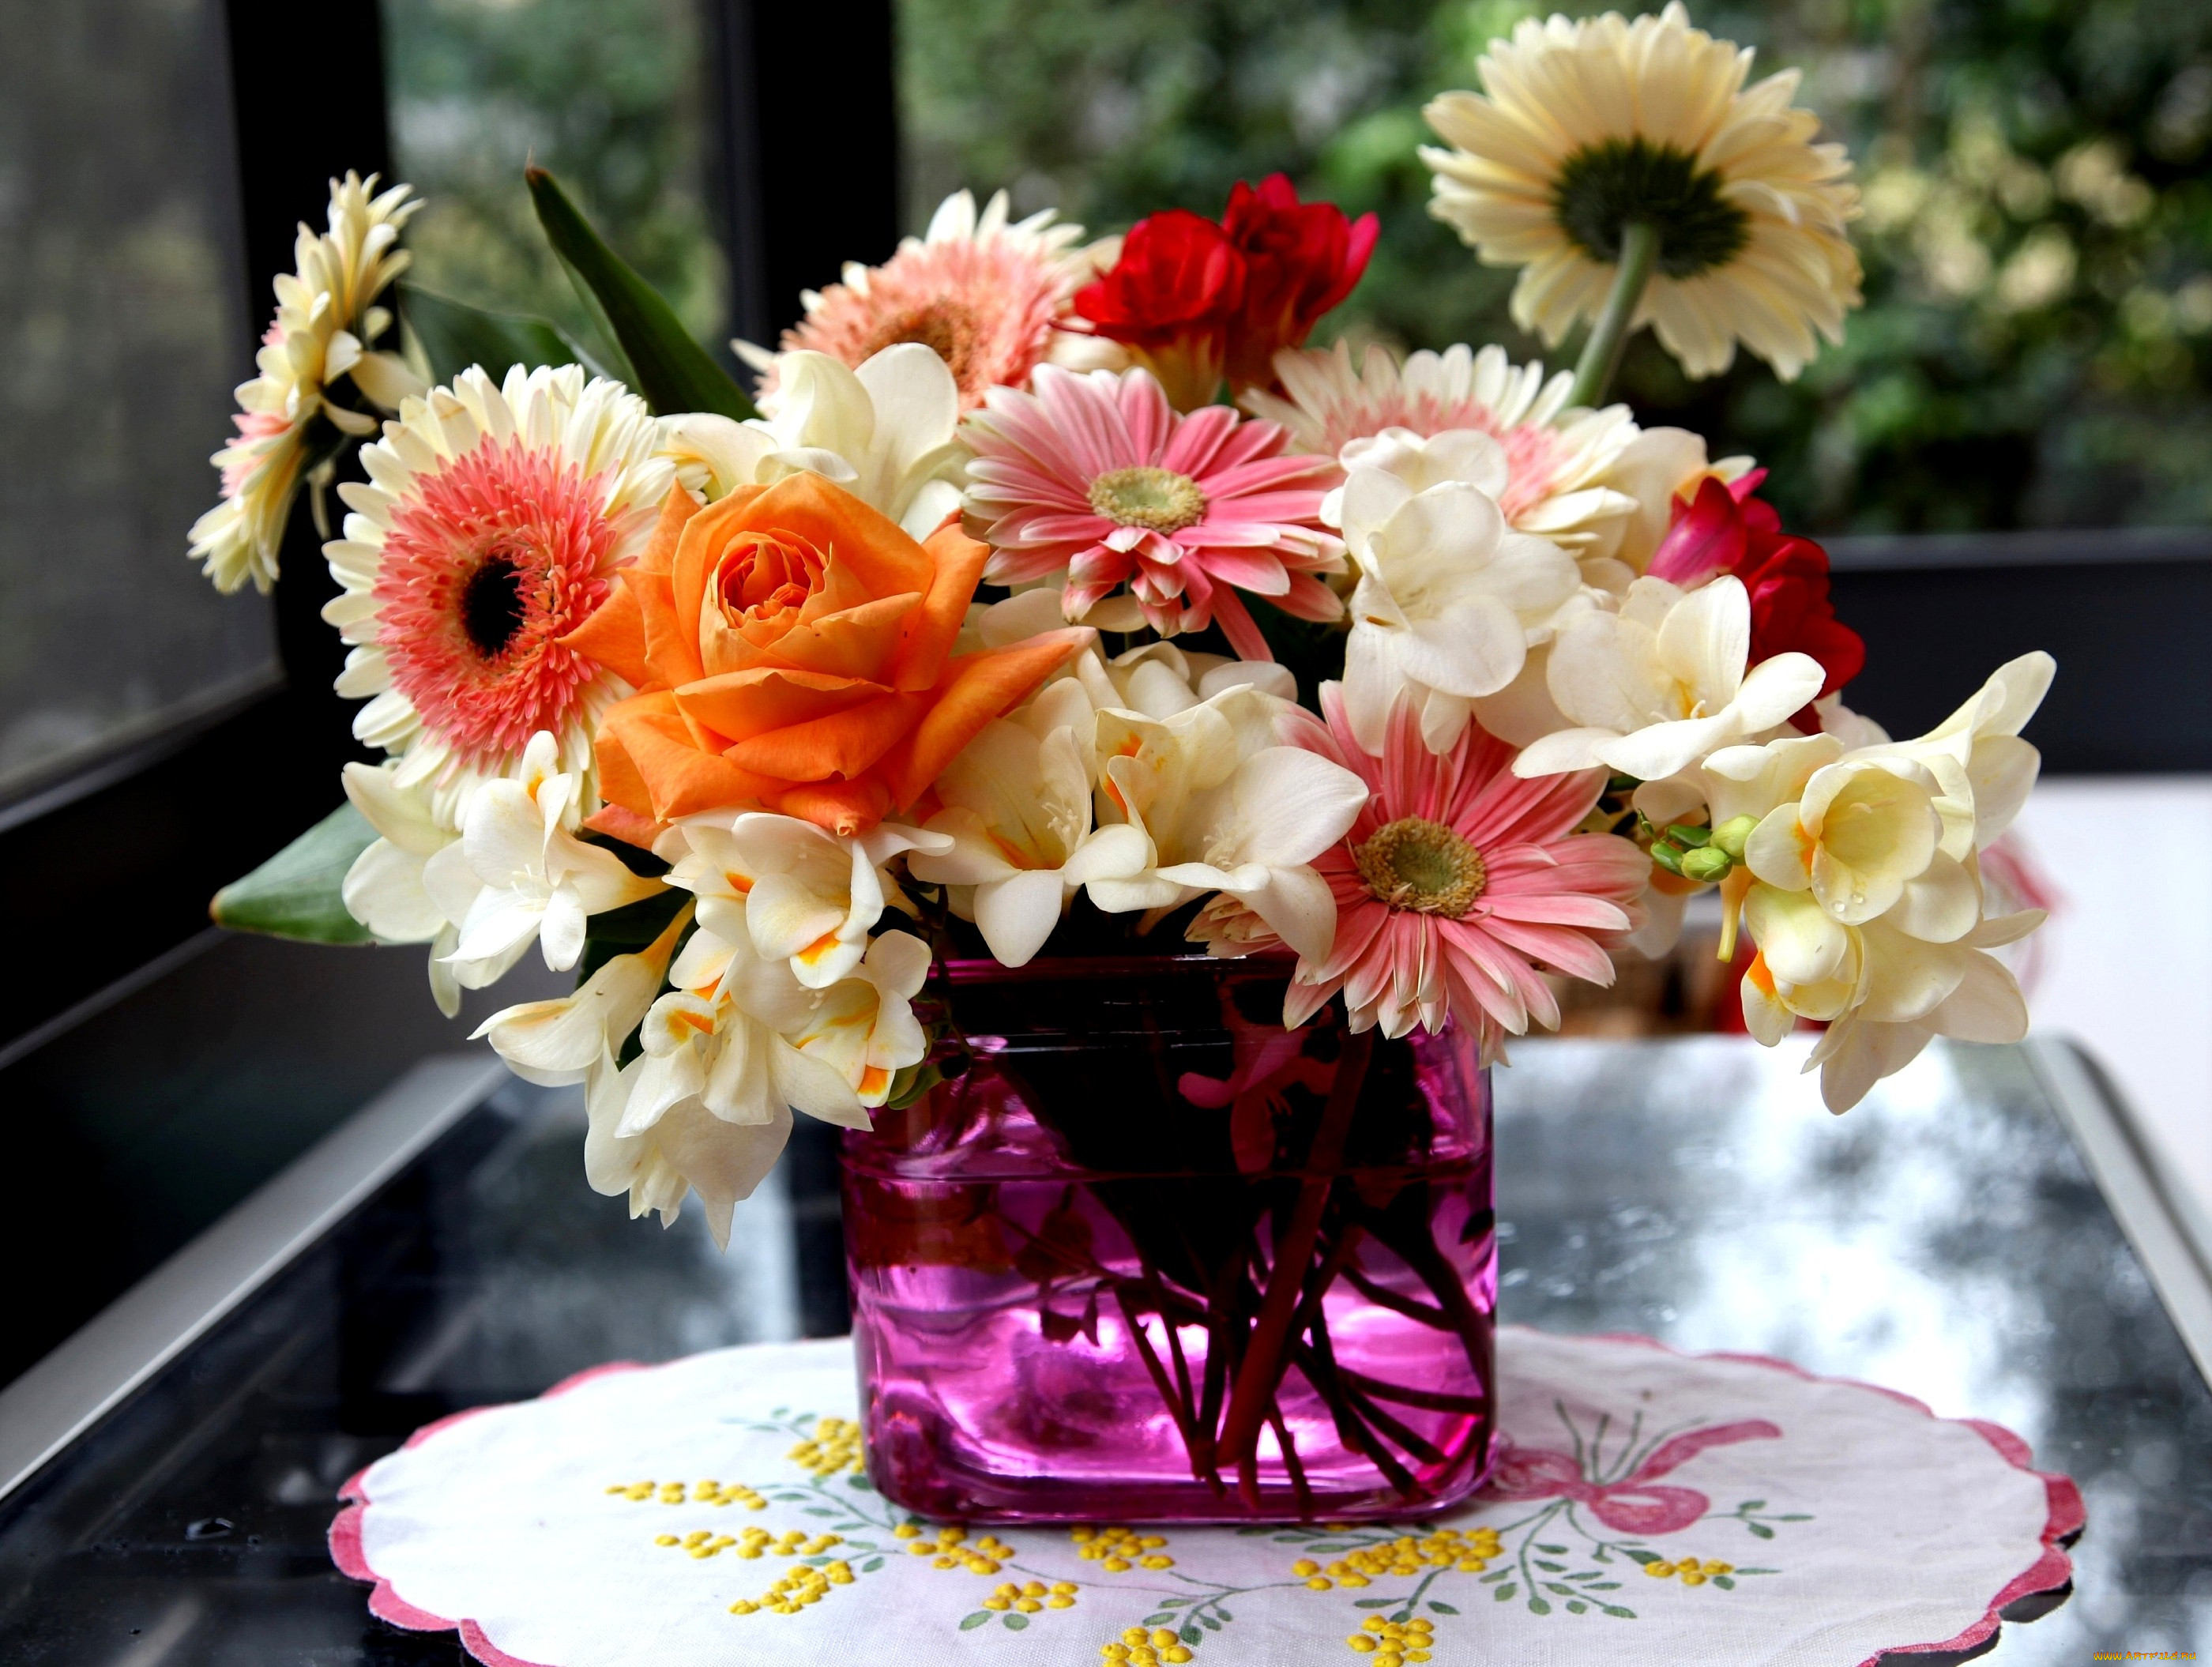 Картинка с цветами на столе. Фрезия герберы букет. Шикарные цветы в вазе. Букет цветов на столе.